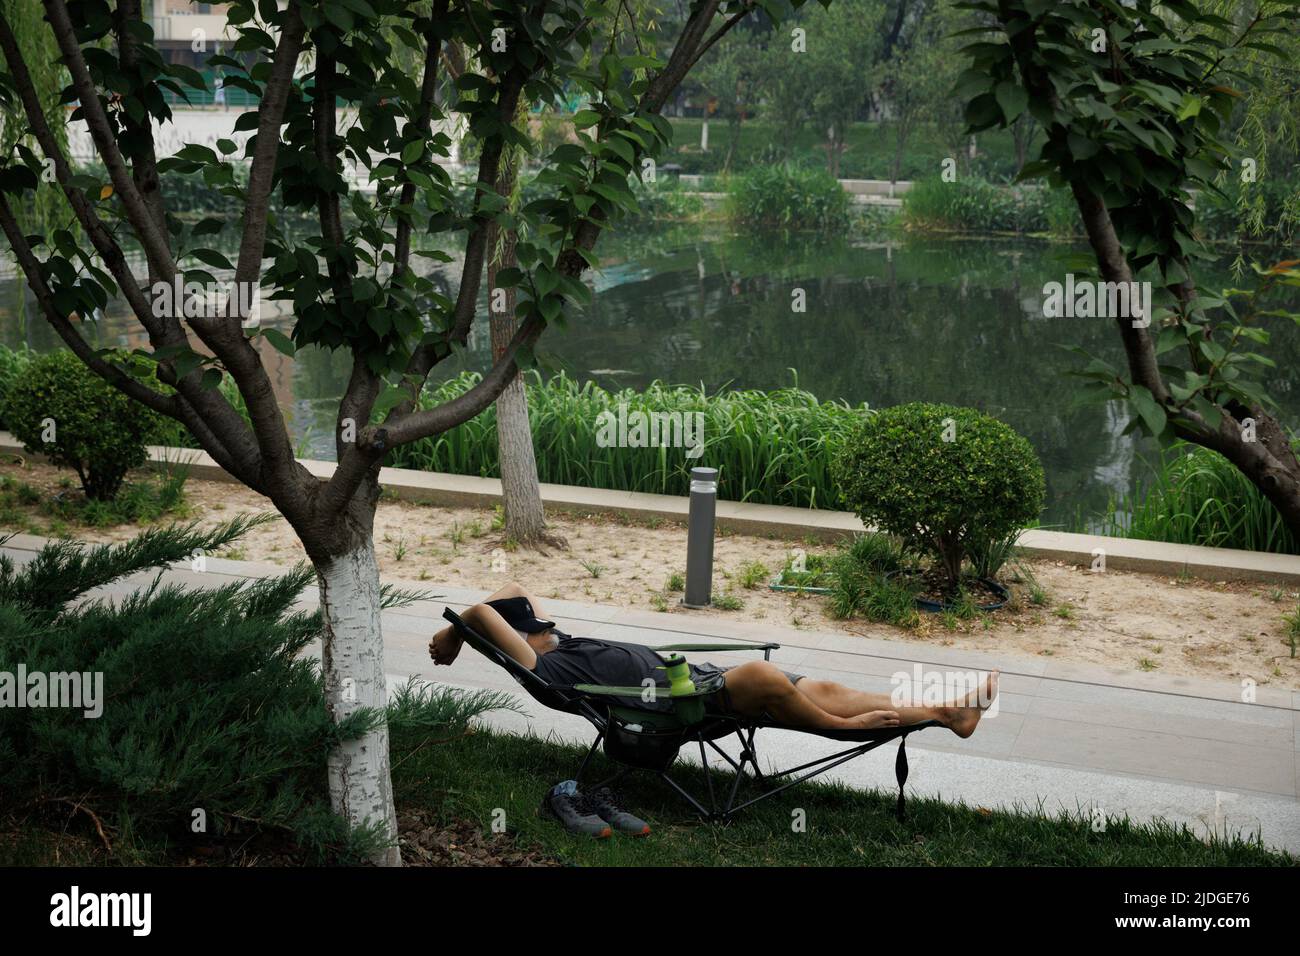 Un uomo riposa in una sedia da campeggio in un canale in una giornata calda a Summer Solstice a Pechino, Cina, 21 giugno 2022. REUTERS/Thomas Peter Foto Stock